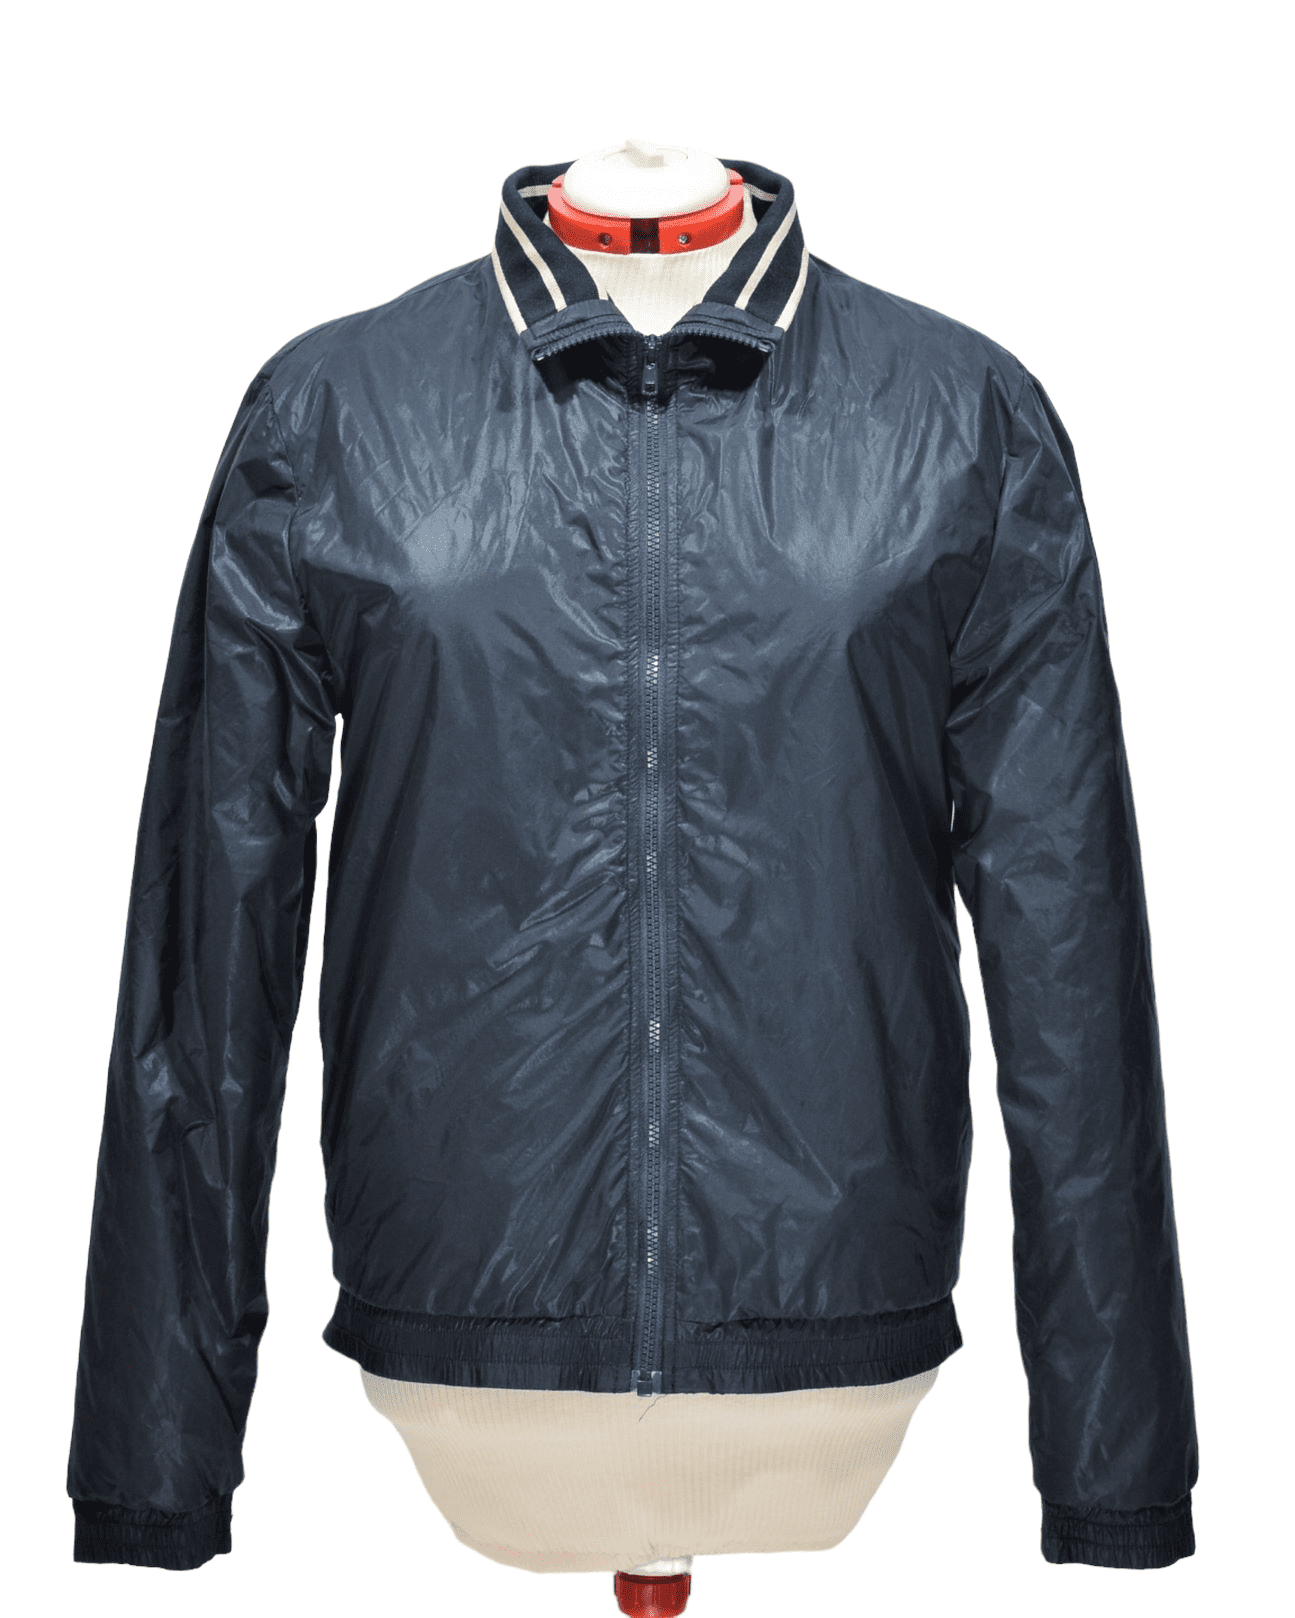 Moschino men's navy blue jacket - Metsvintage